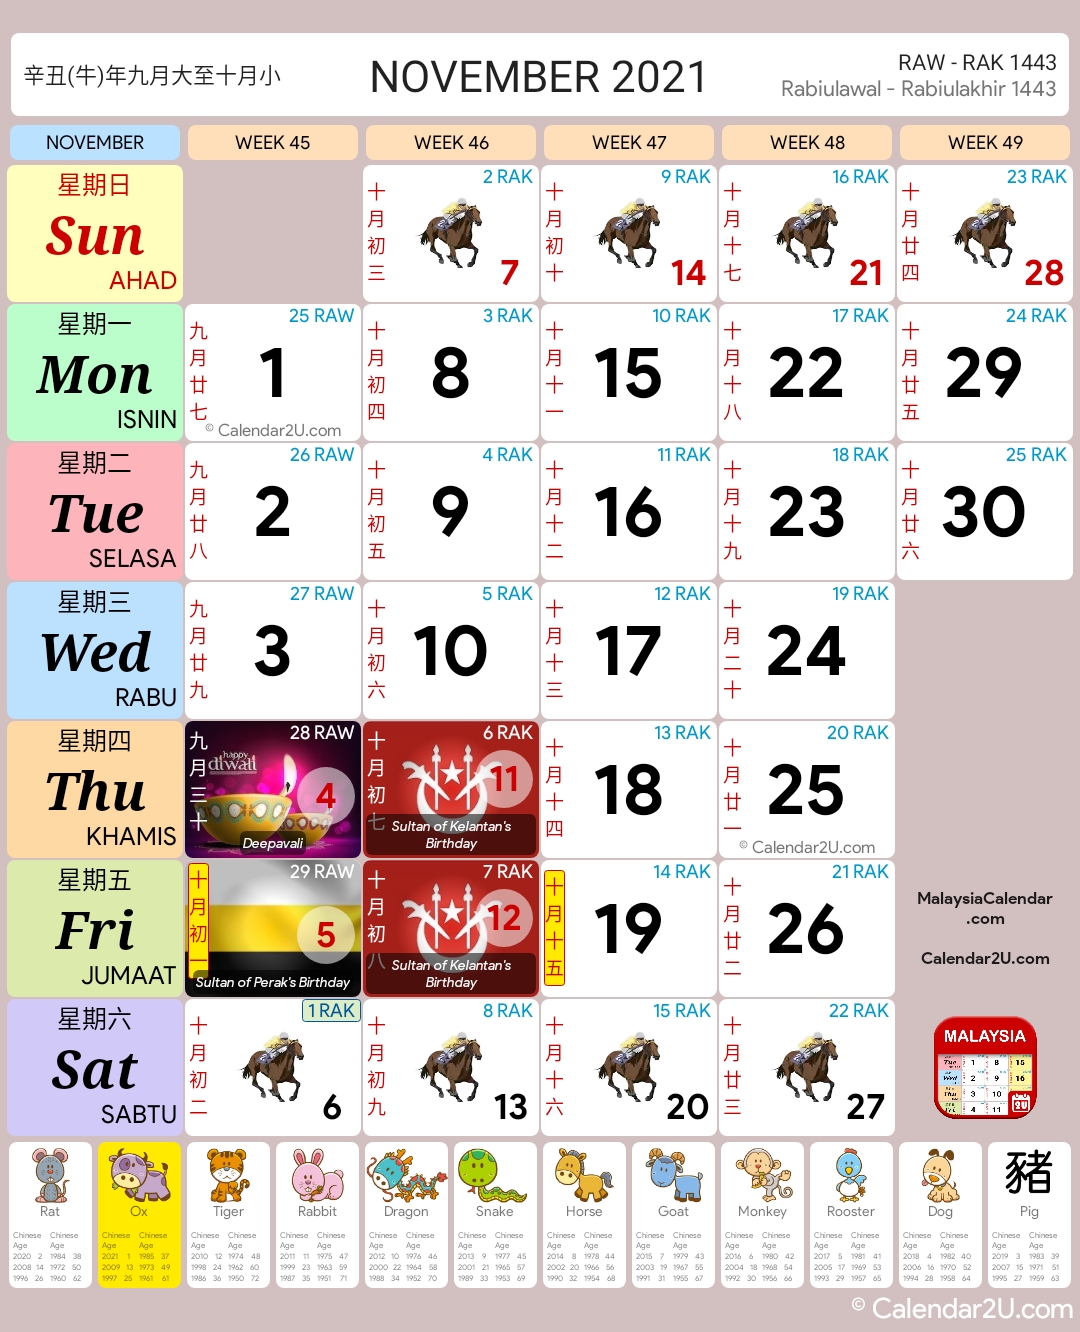 Kalendar ogos 2021 malaysia